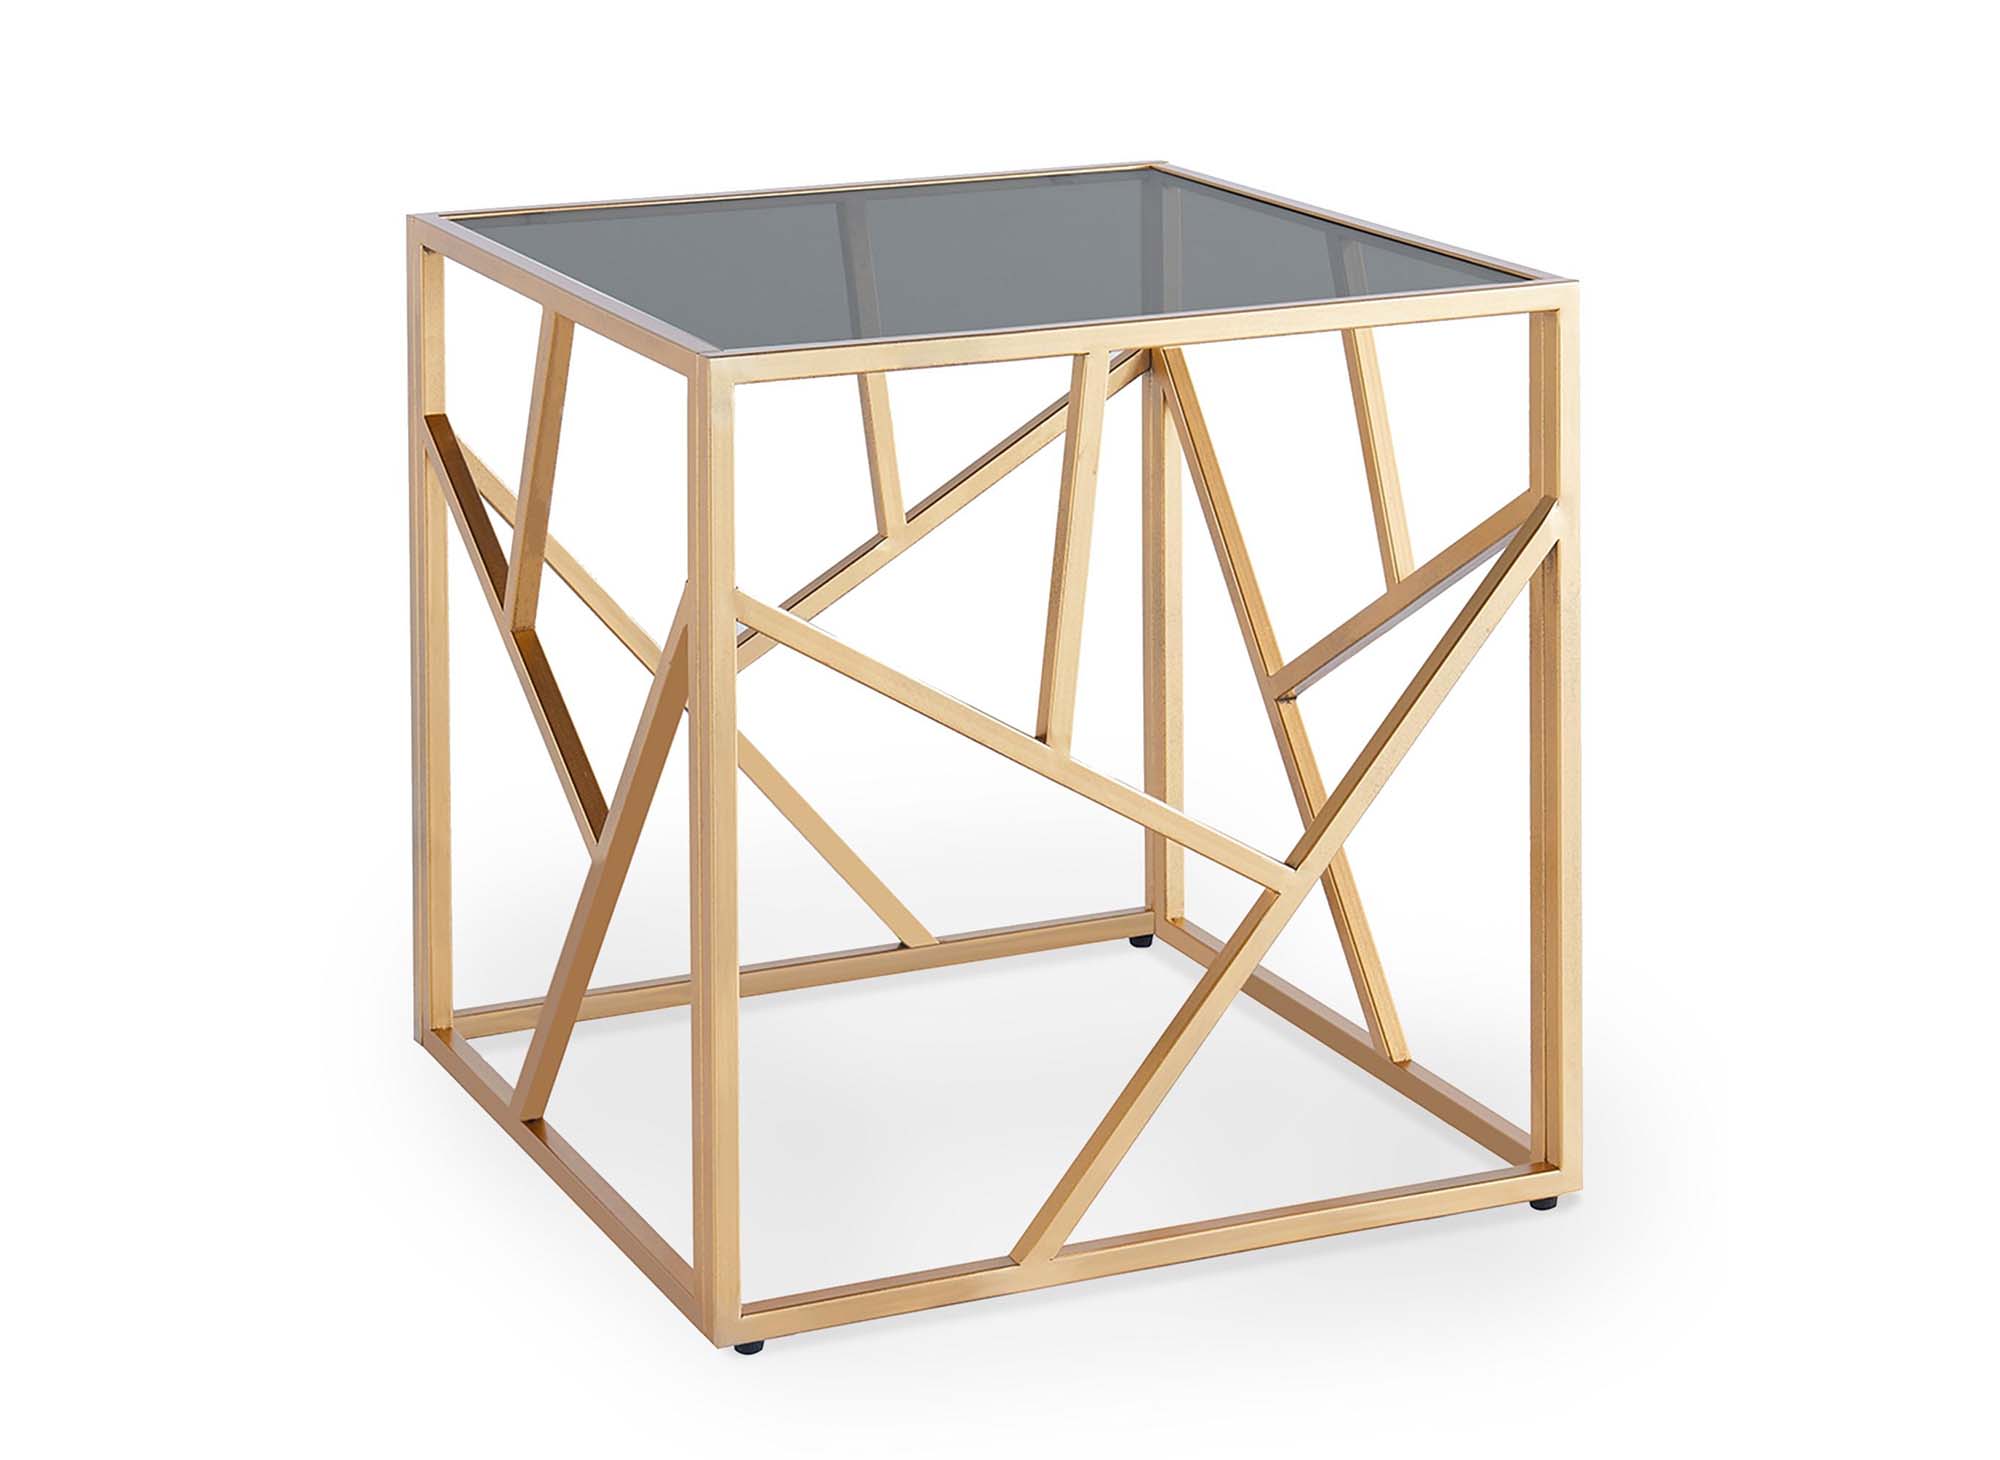 Table basse design en verre noir et métal doré carrée SOLAL